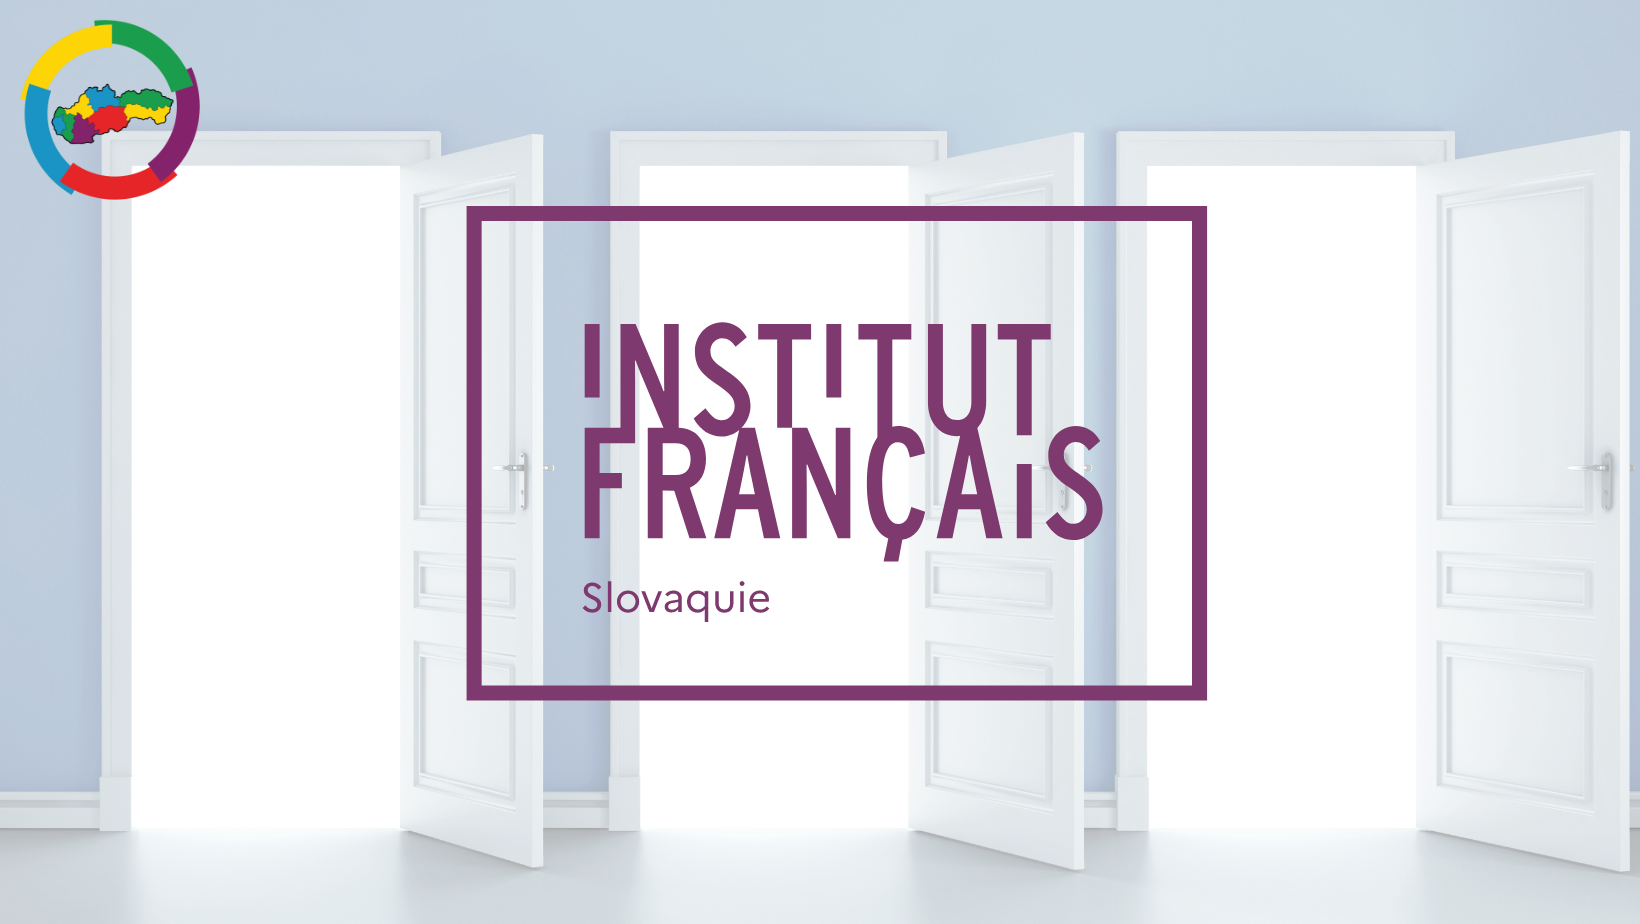 Deň otvorených dverí vo Francúzskom inštitúte